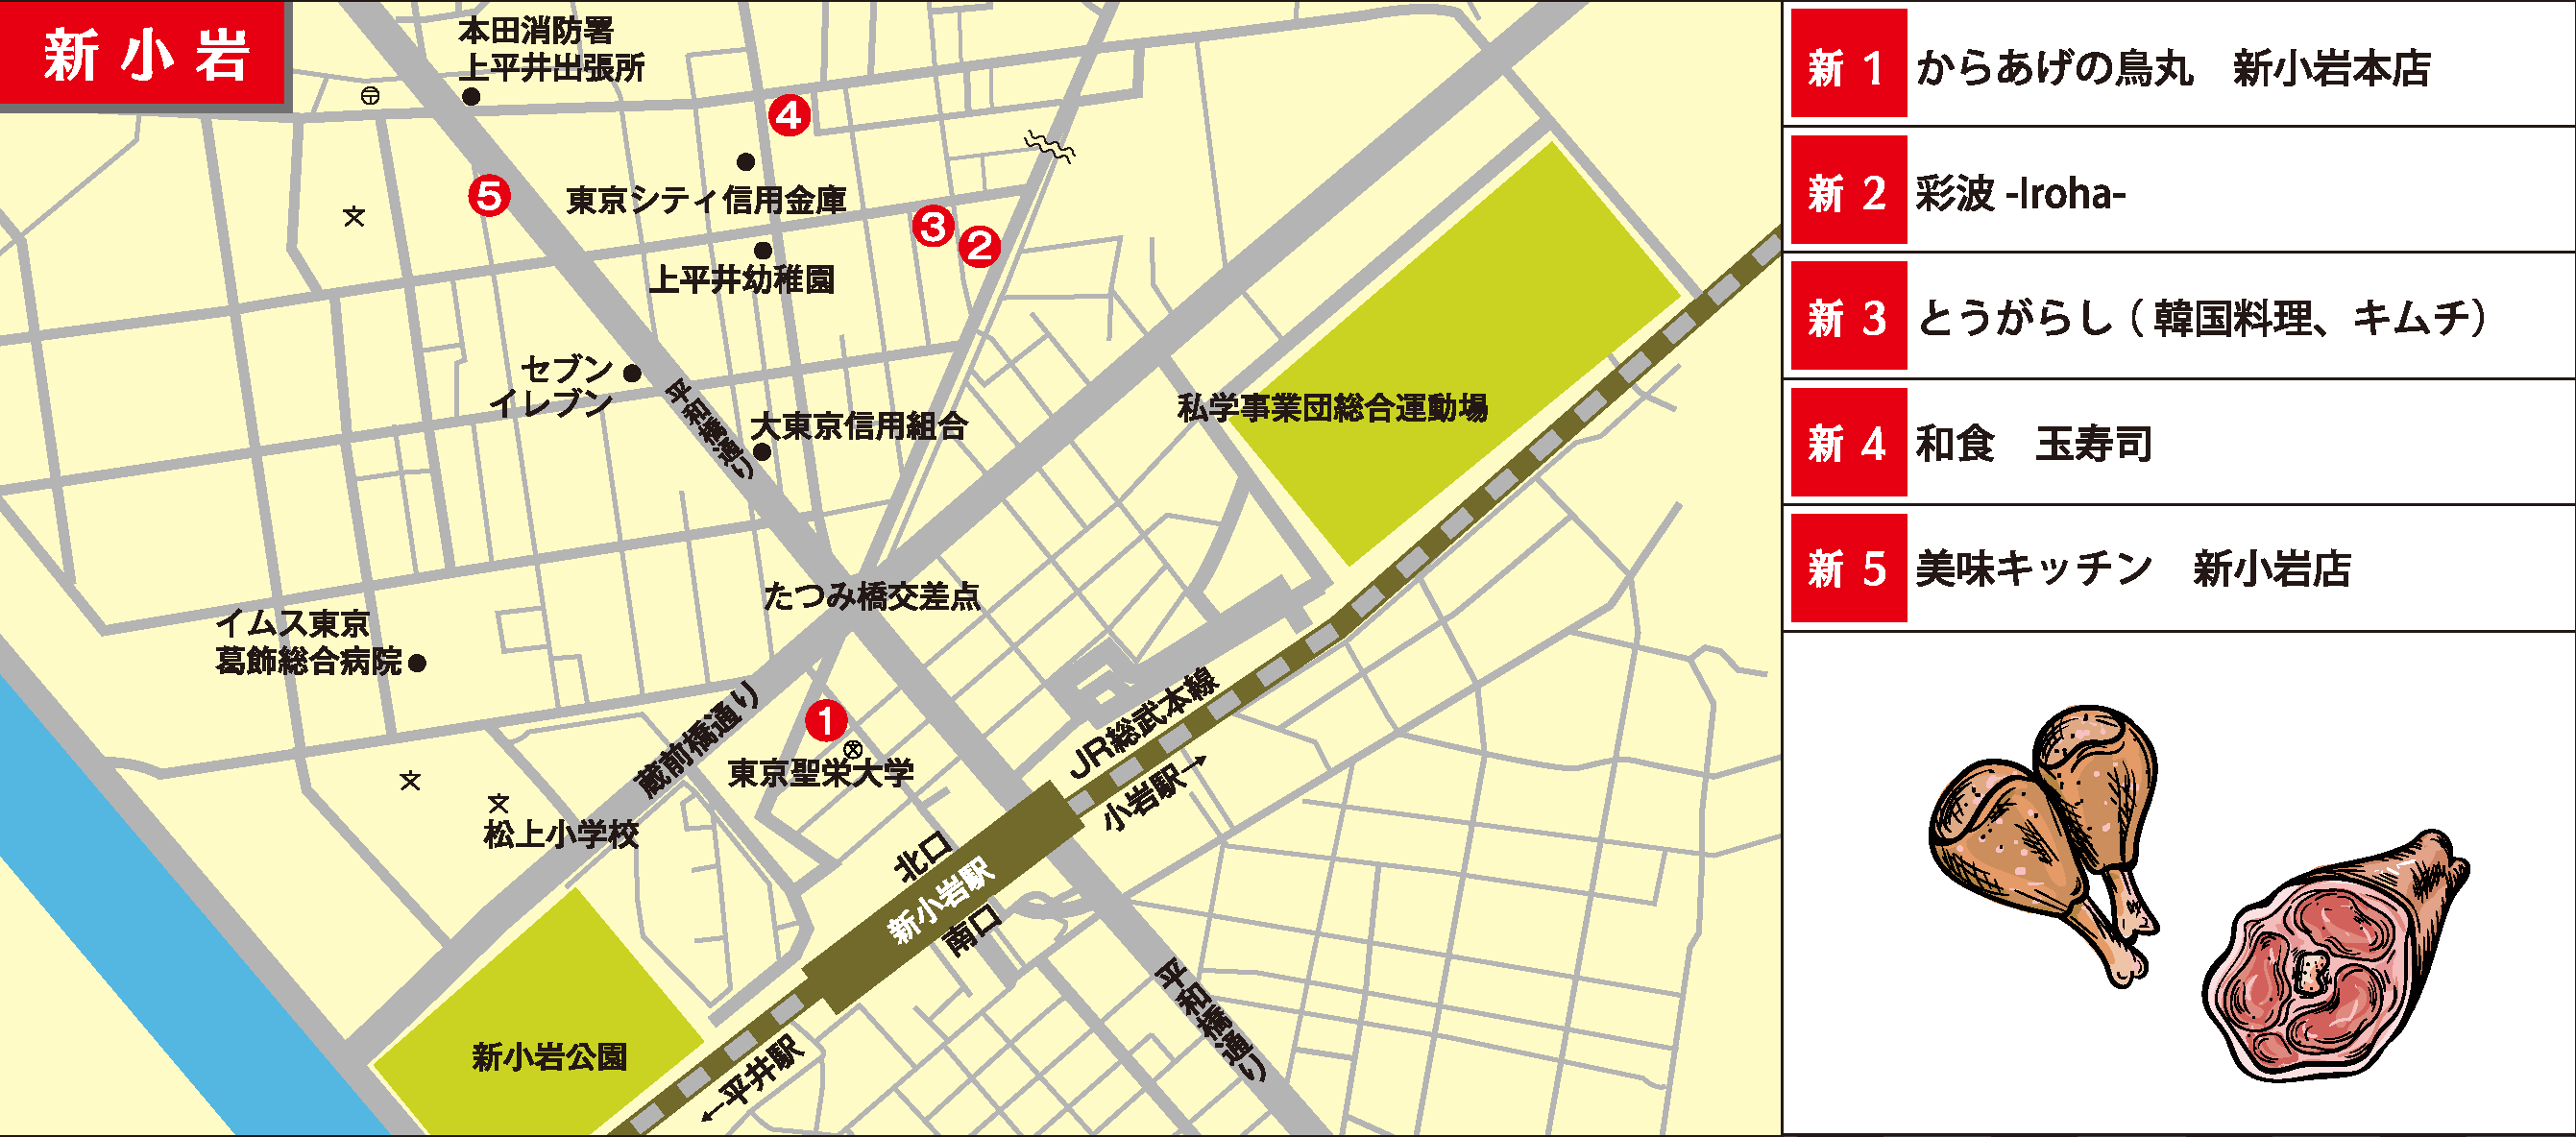 ph_nf2021_shinkoiwa-map